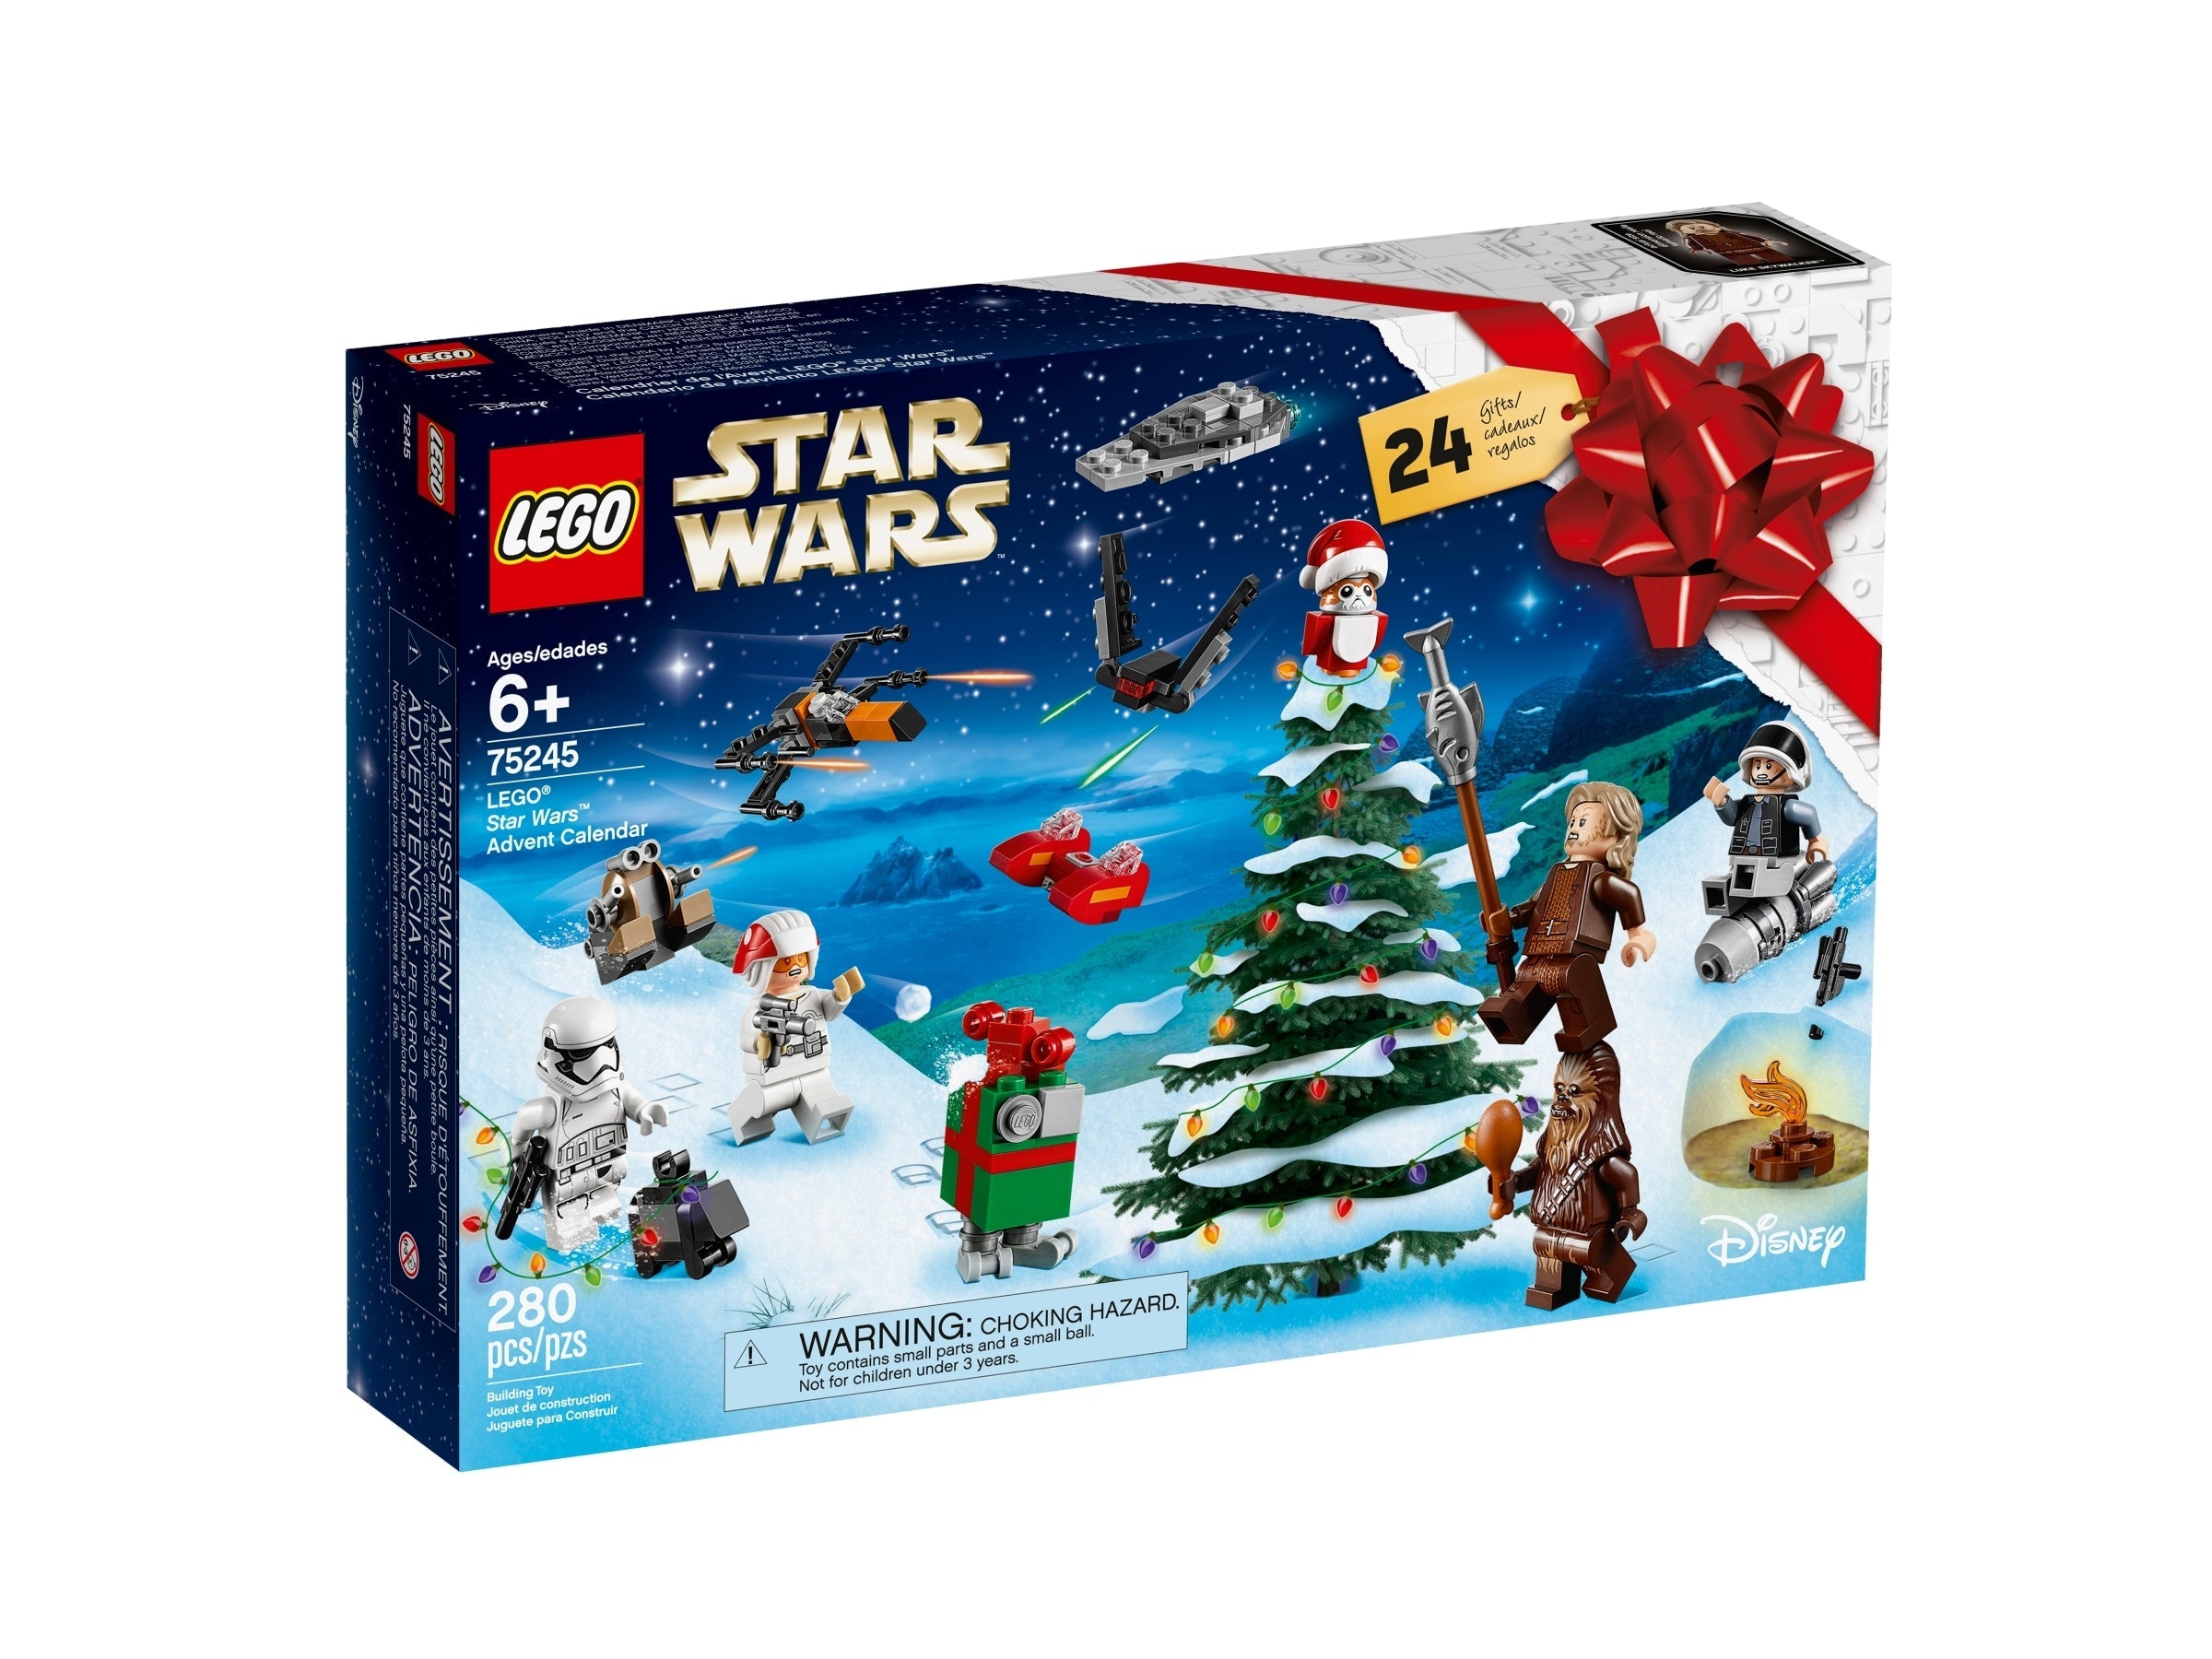 LEGO Star Wars Adventskalender (75245) - im GOLDSTIEN.SHOP verfügbar mit Gratisversand ab Schweizer Lager! (5702016369847)